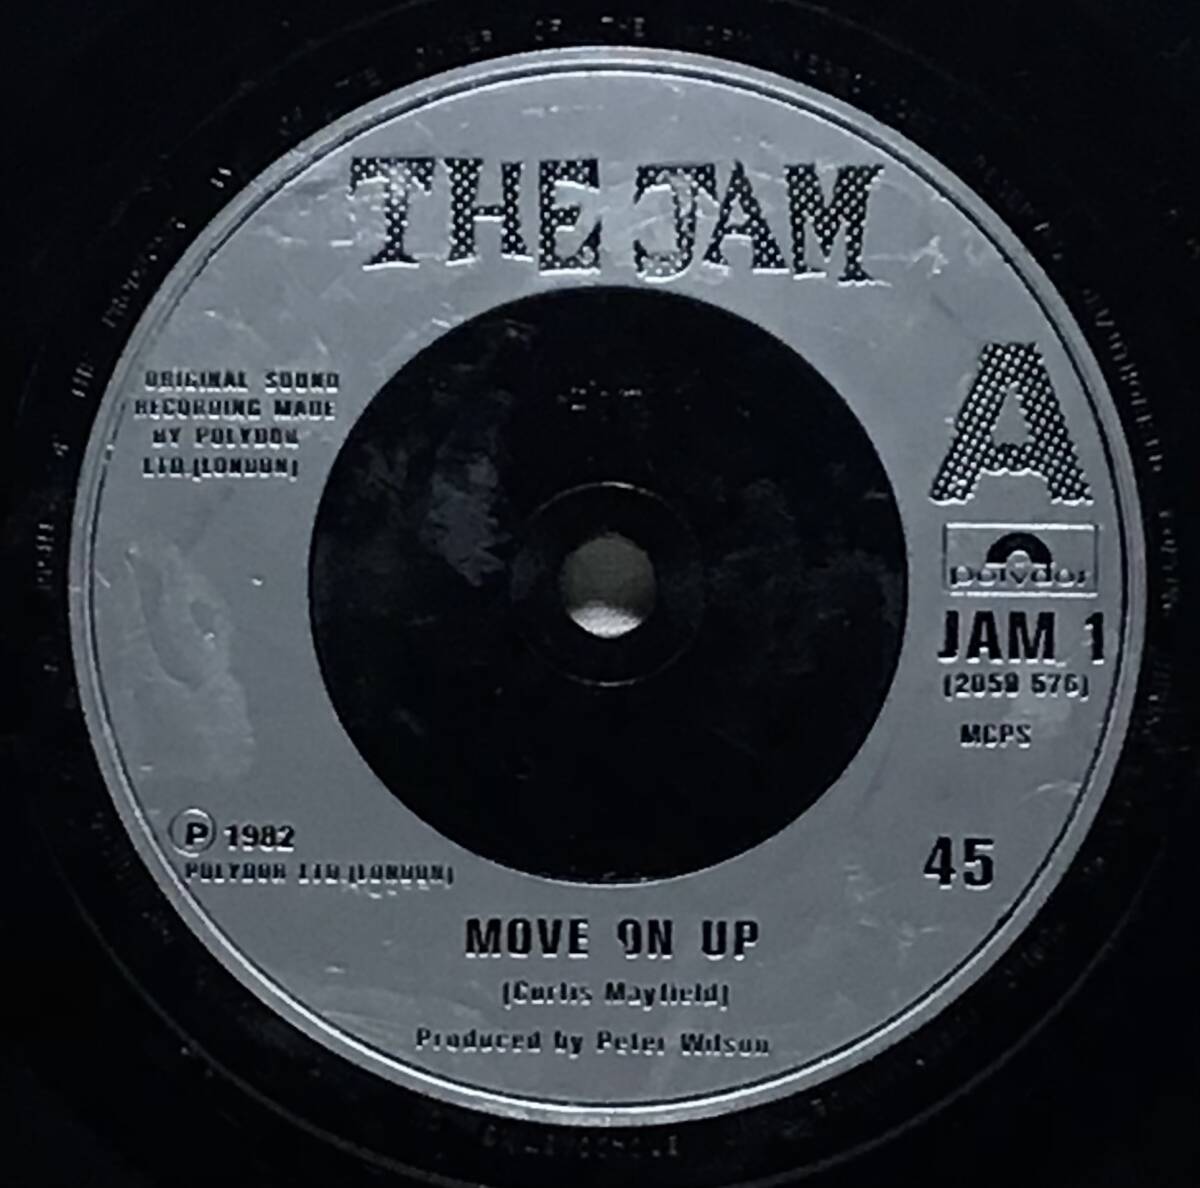 【英7 2枚組】 THE JAM / BEAT SURRENDER / MOVE ON UP カーティスメイフィールド カバー 5曲入り 1982 UK盤 7インチレコード EP 45 試聴済の画像7